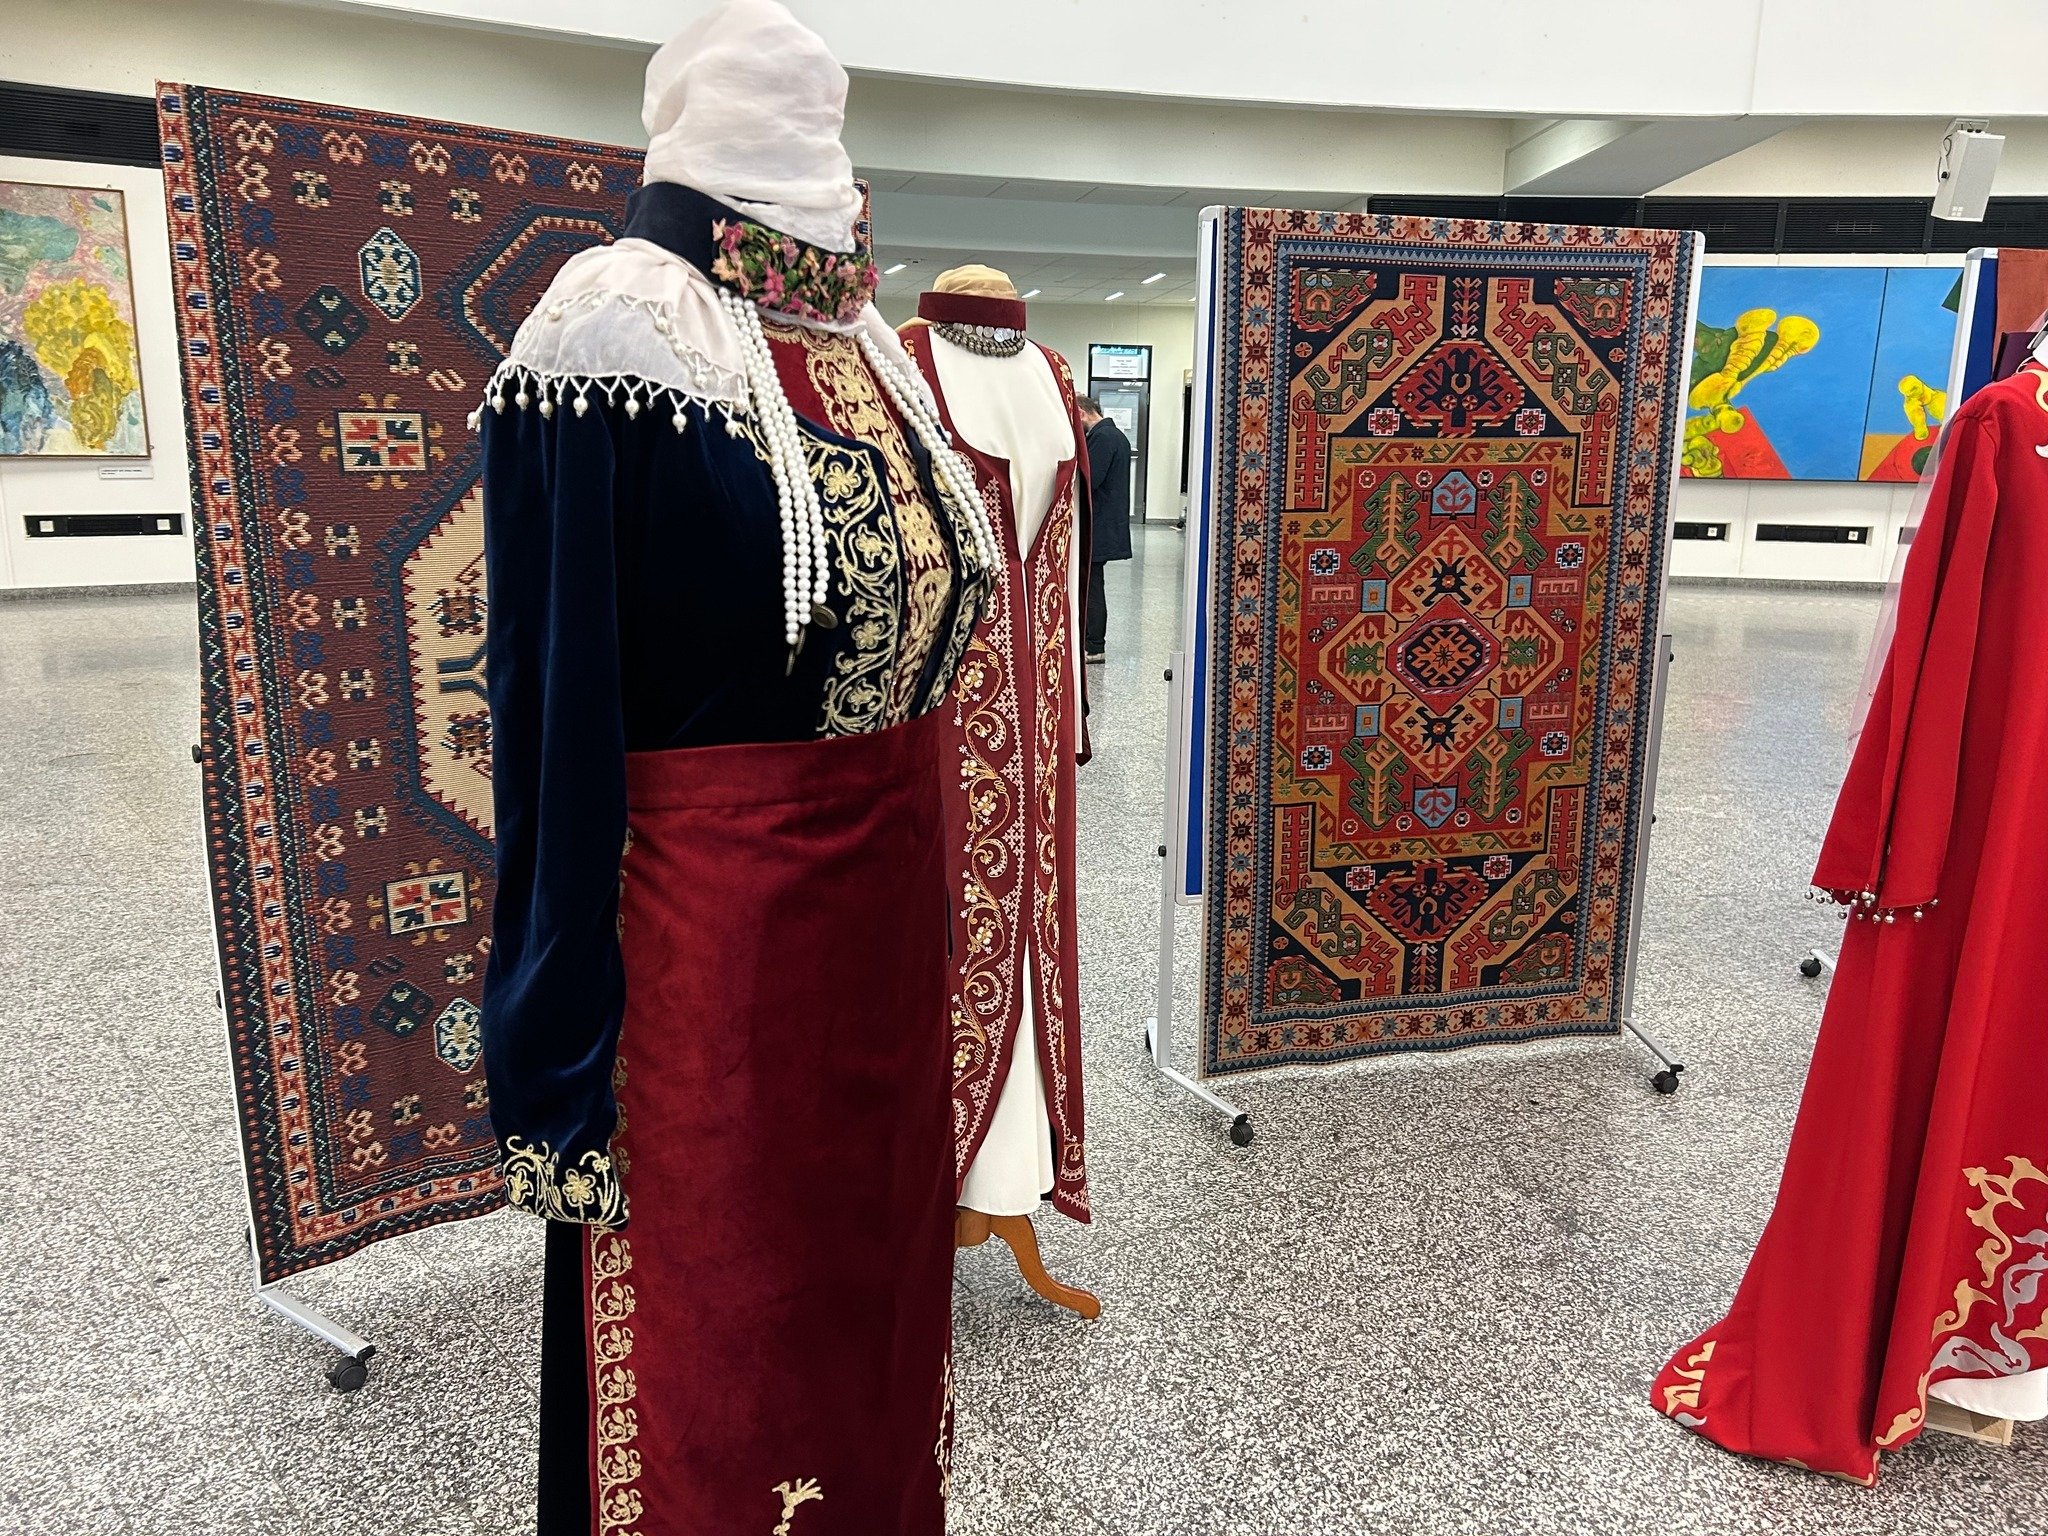 Վիեննայի ՄԱԿ-ի գրասենյակում բացվել է «Տերյան մշակութային կենտրոն»-ի՝ հայկական ավանդական տարազների և գորգերի մեկշաբաթյա ցուցադրությունը․ լուսանկարներ